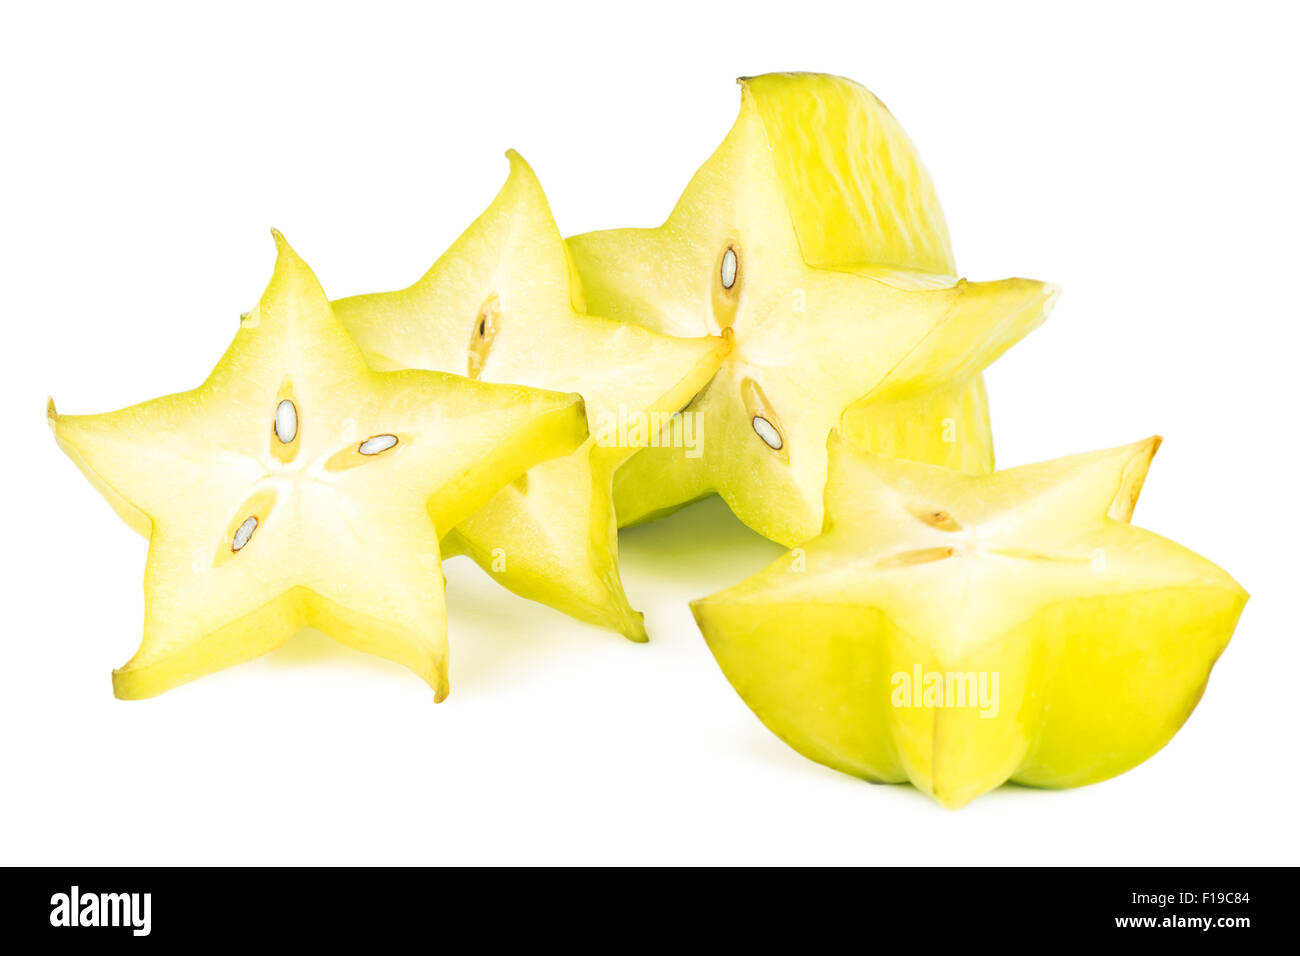 Close-up of four carambola (starfruit) slices, isolated on white background. Stock Photo